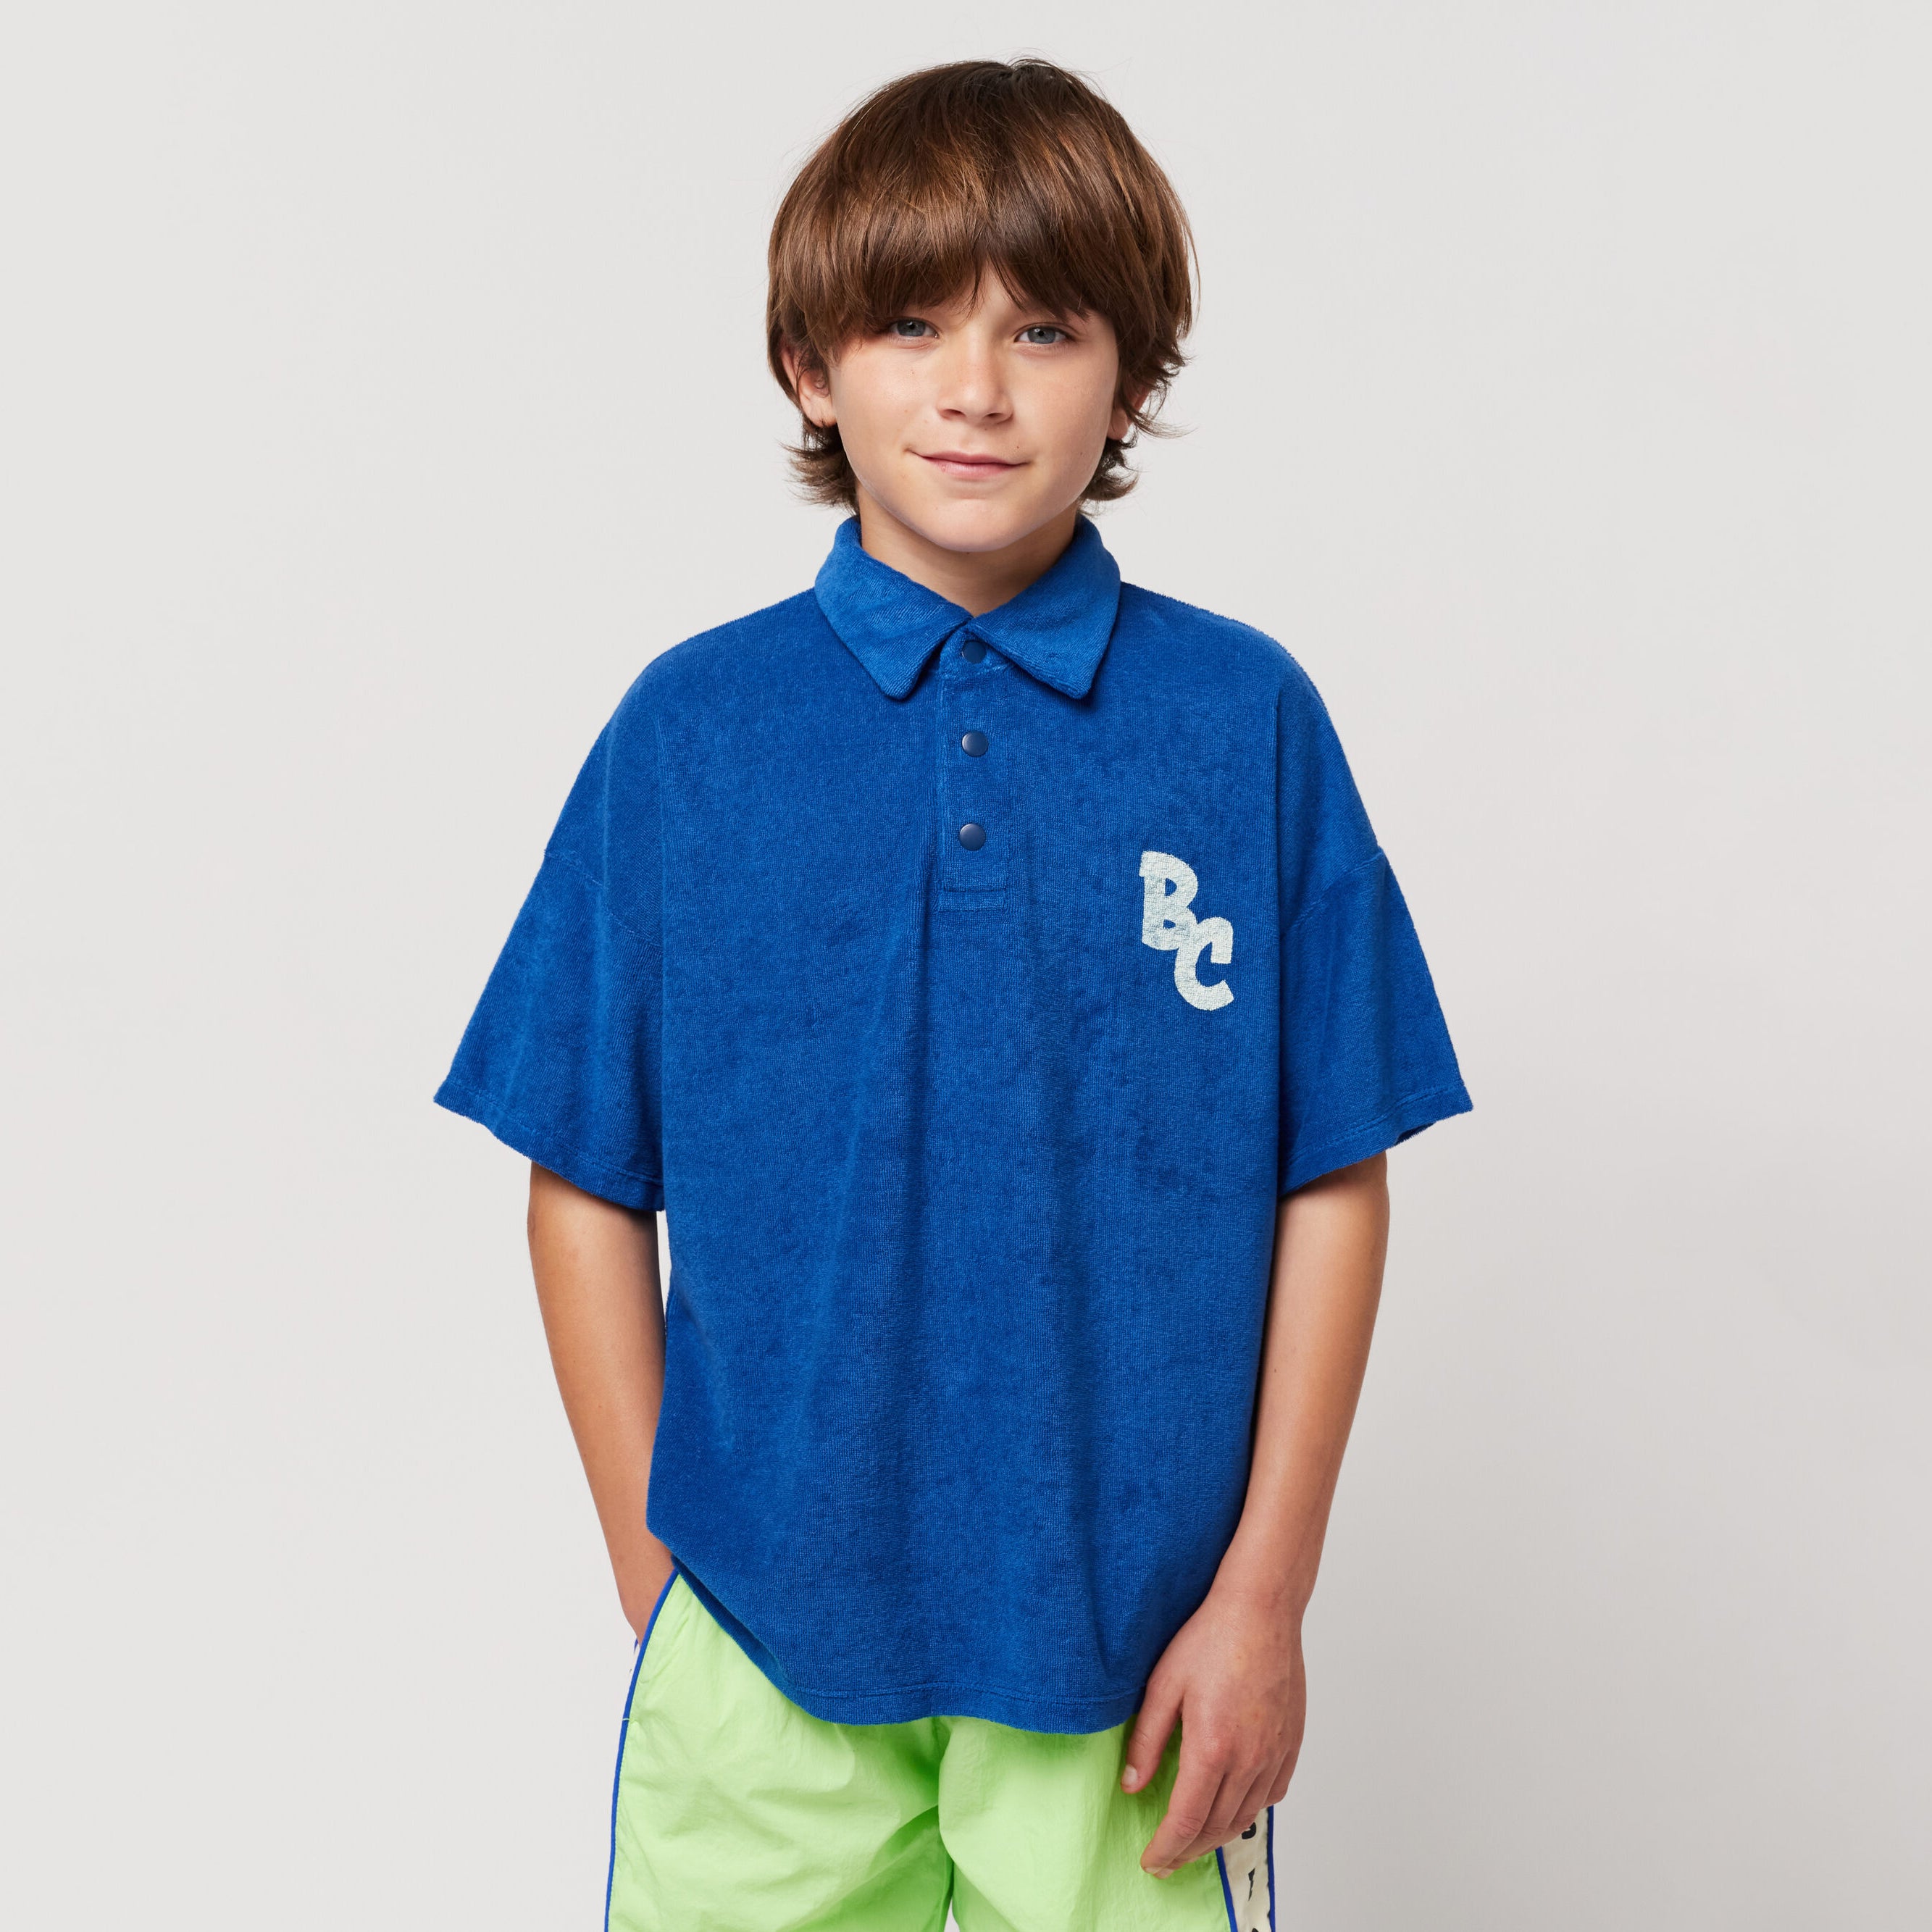 Boys Blue Logo Cotton Polo Shirt